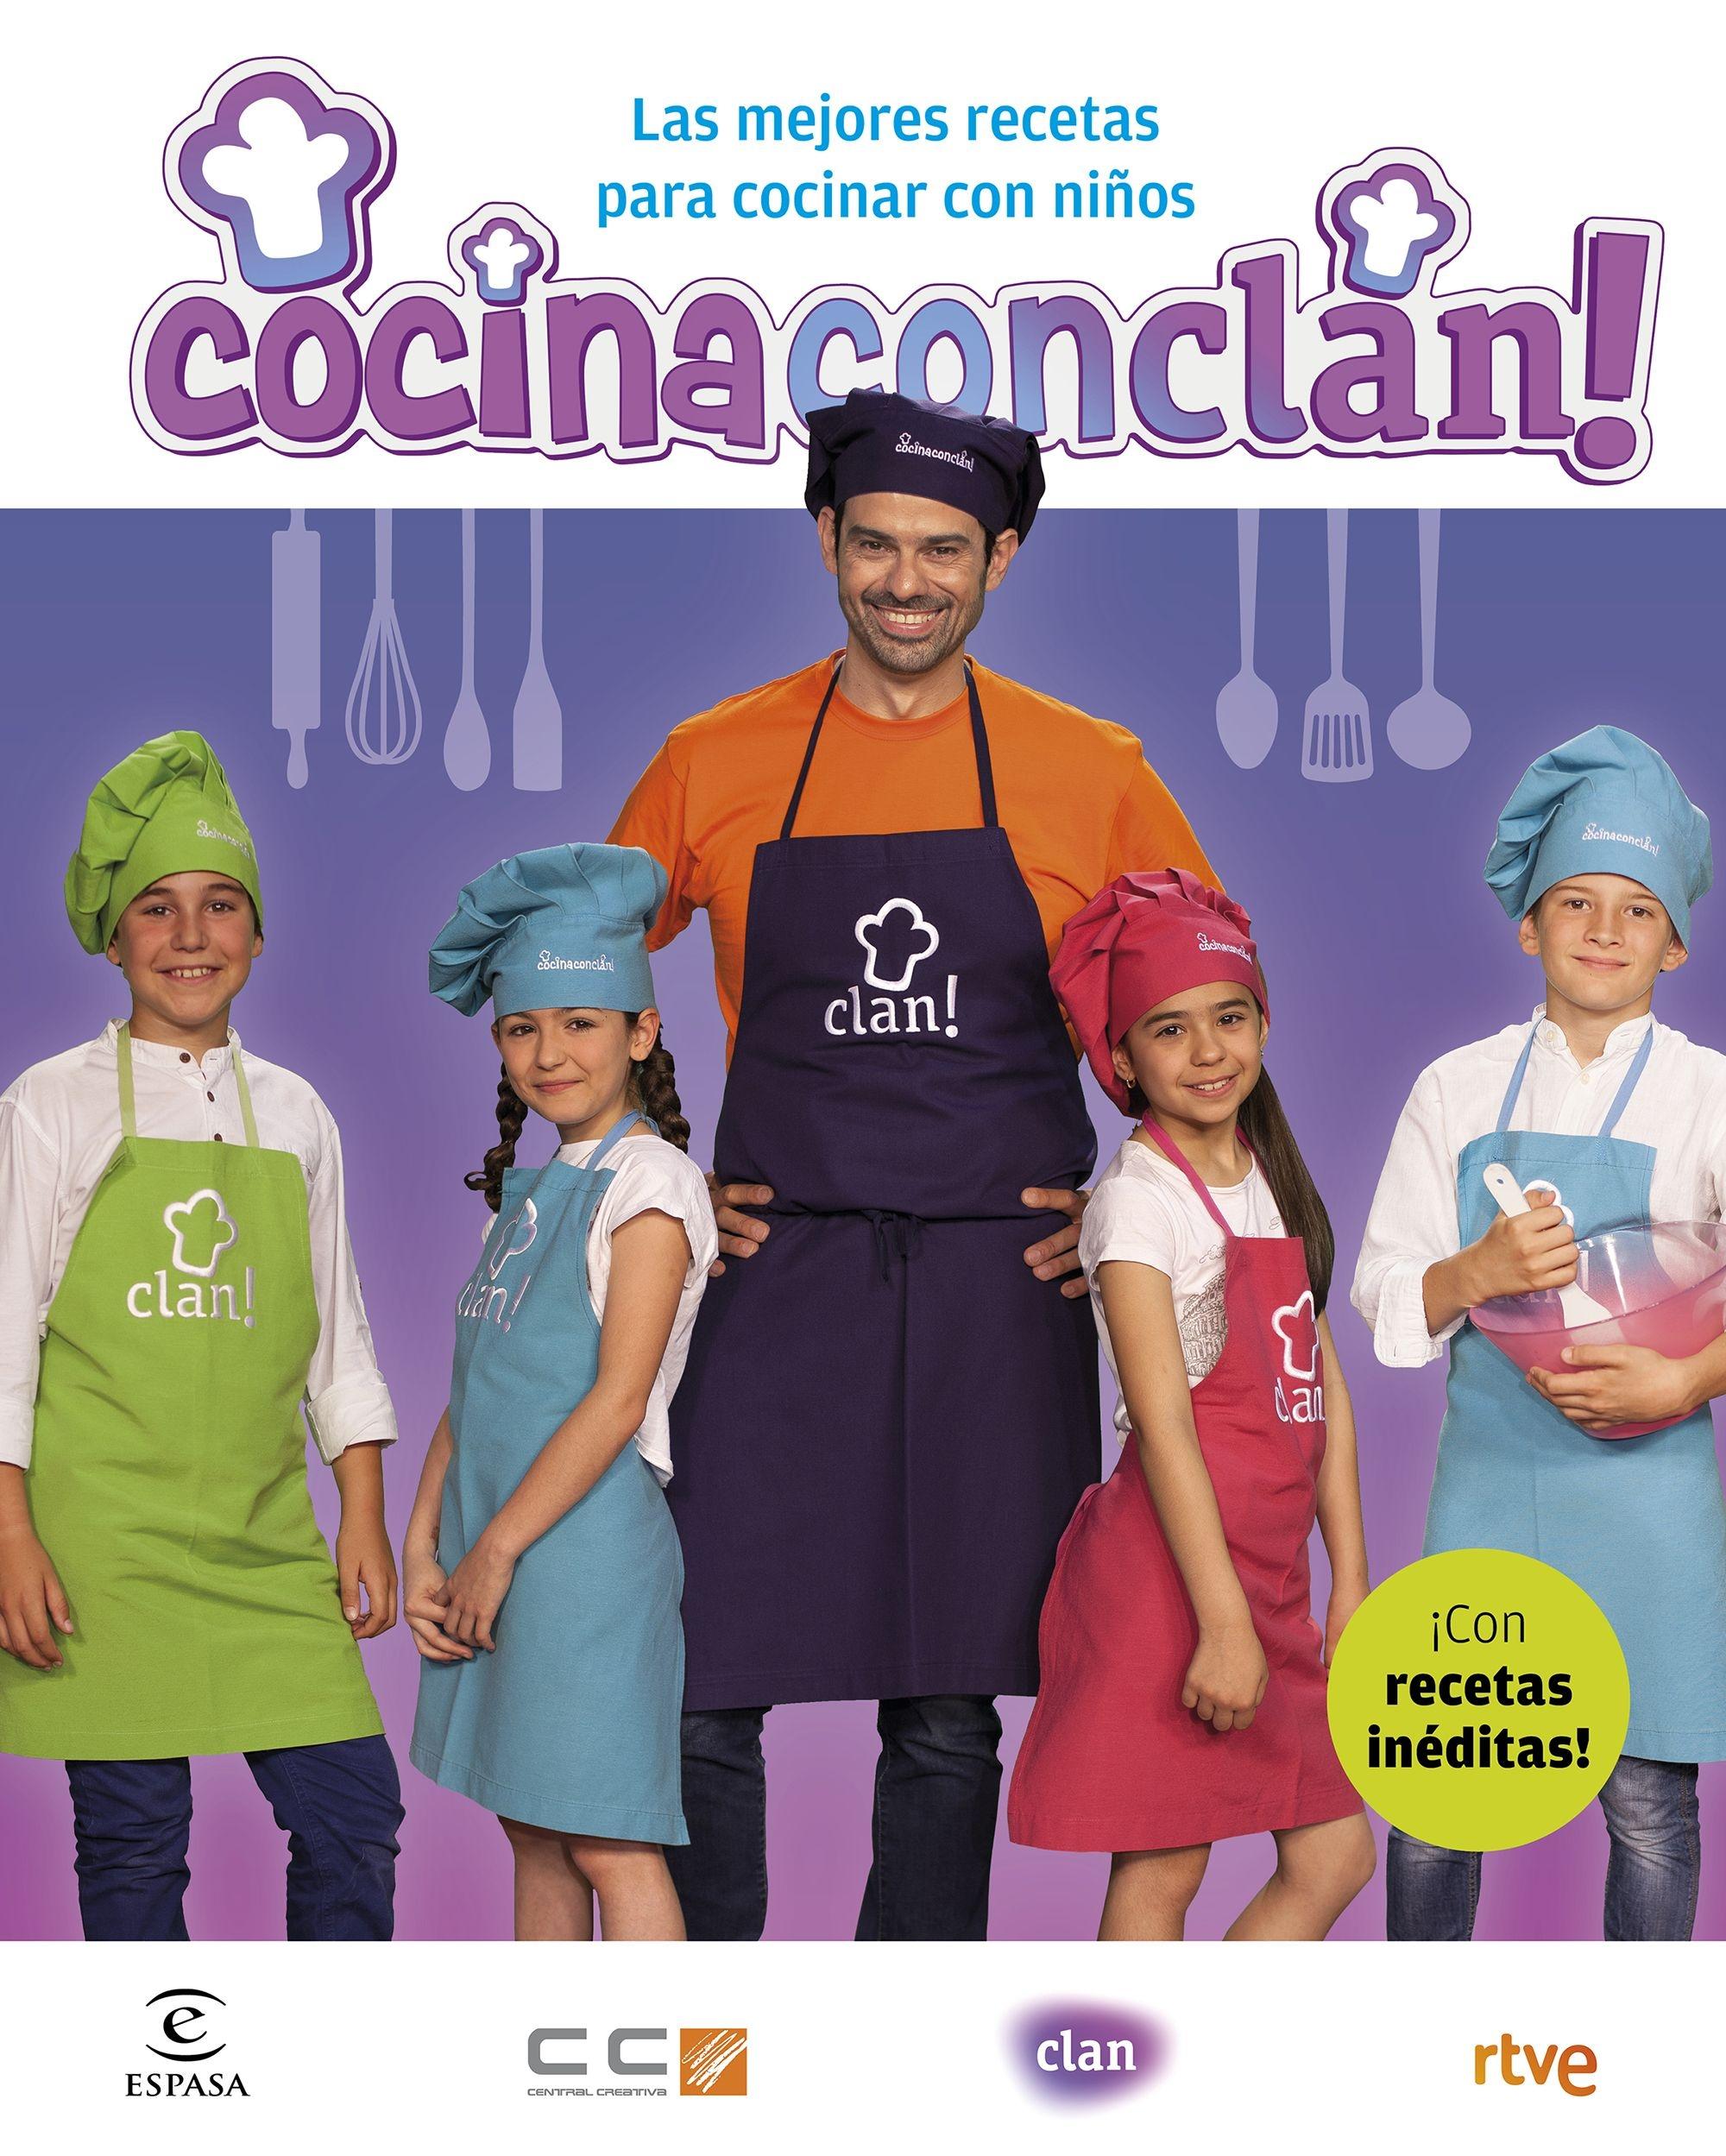 Cocina con Clan "Las mejores recetas para cocinar con niños"